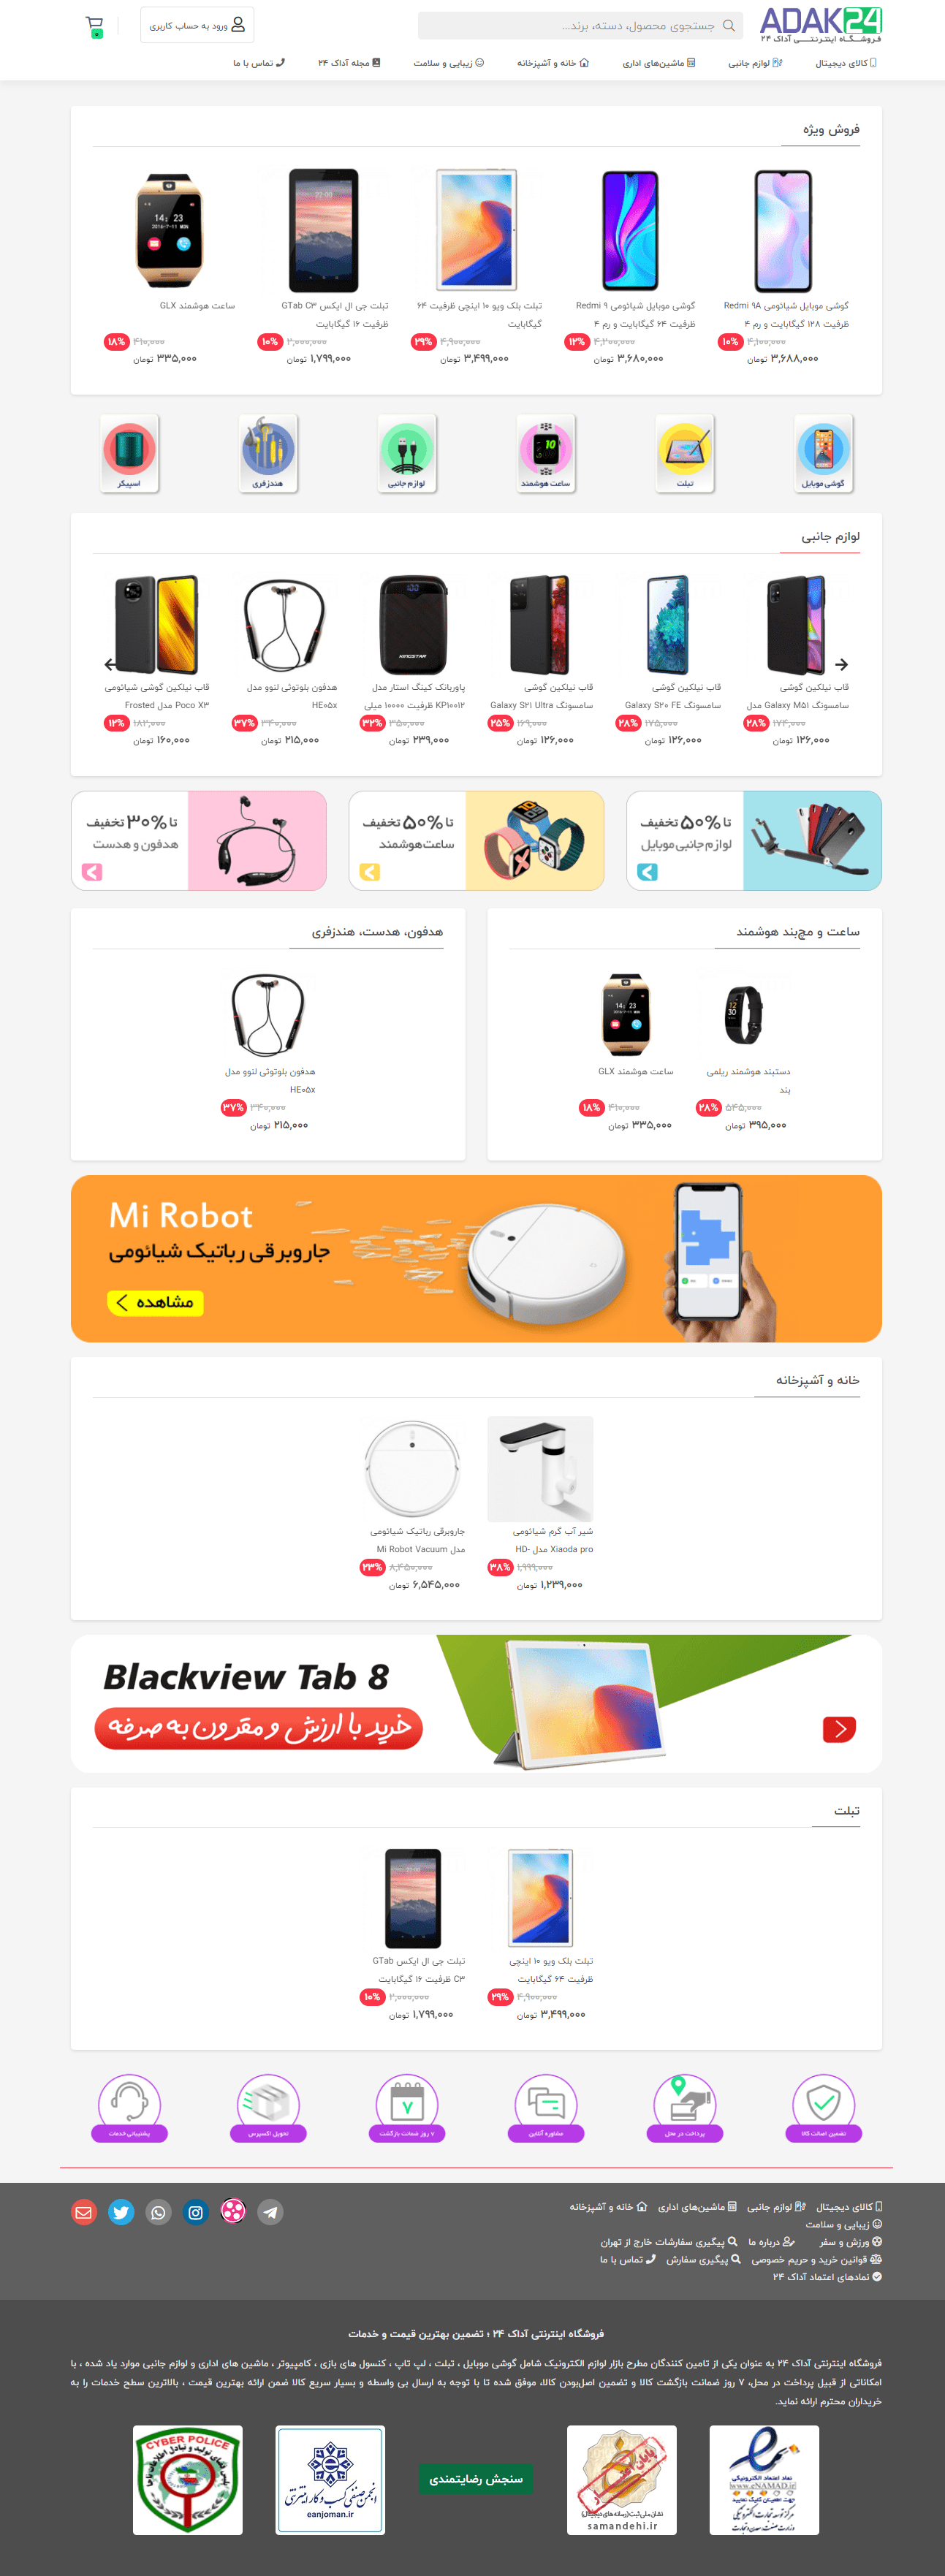 طراحی فروشگاه اینترنتی آداک 24 | مرجع تخصصی گوشی موبایل، تبلت و گجت